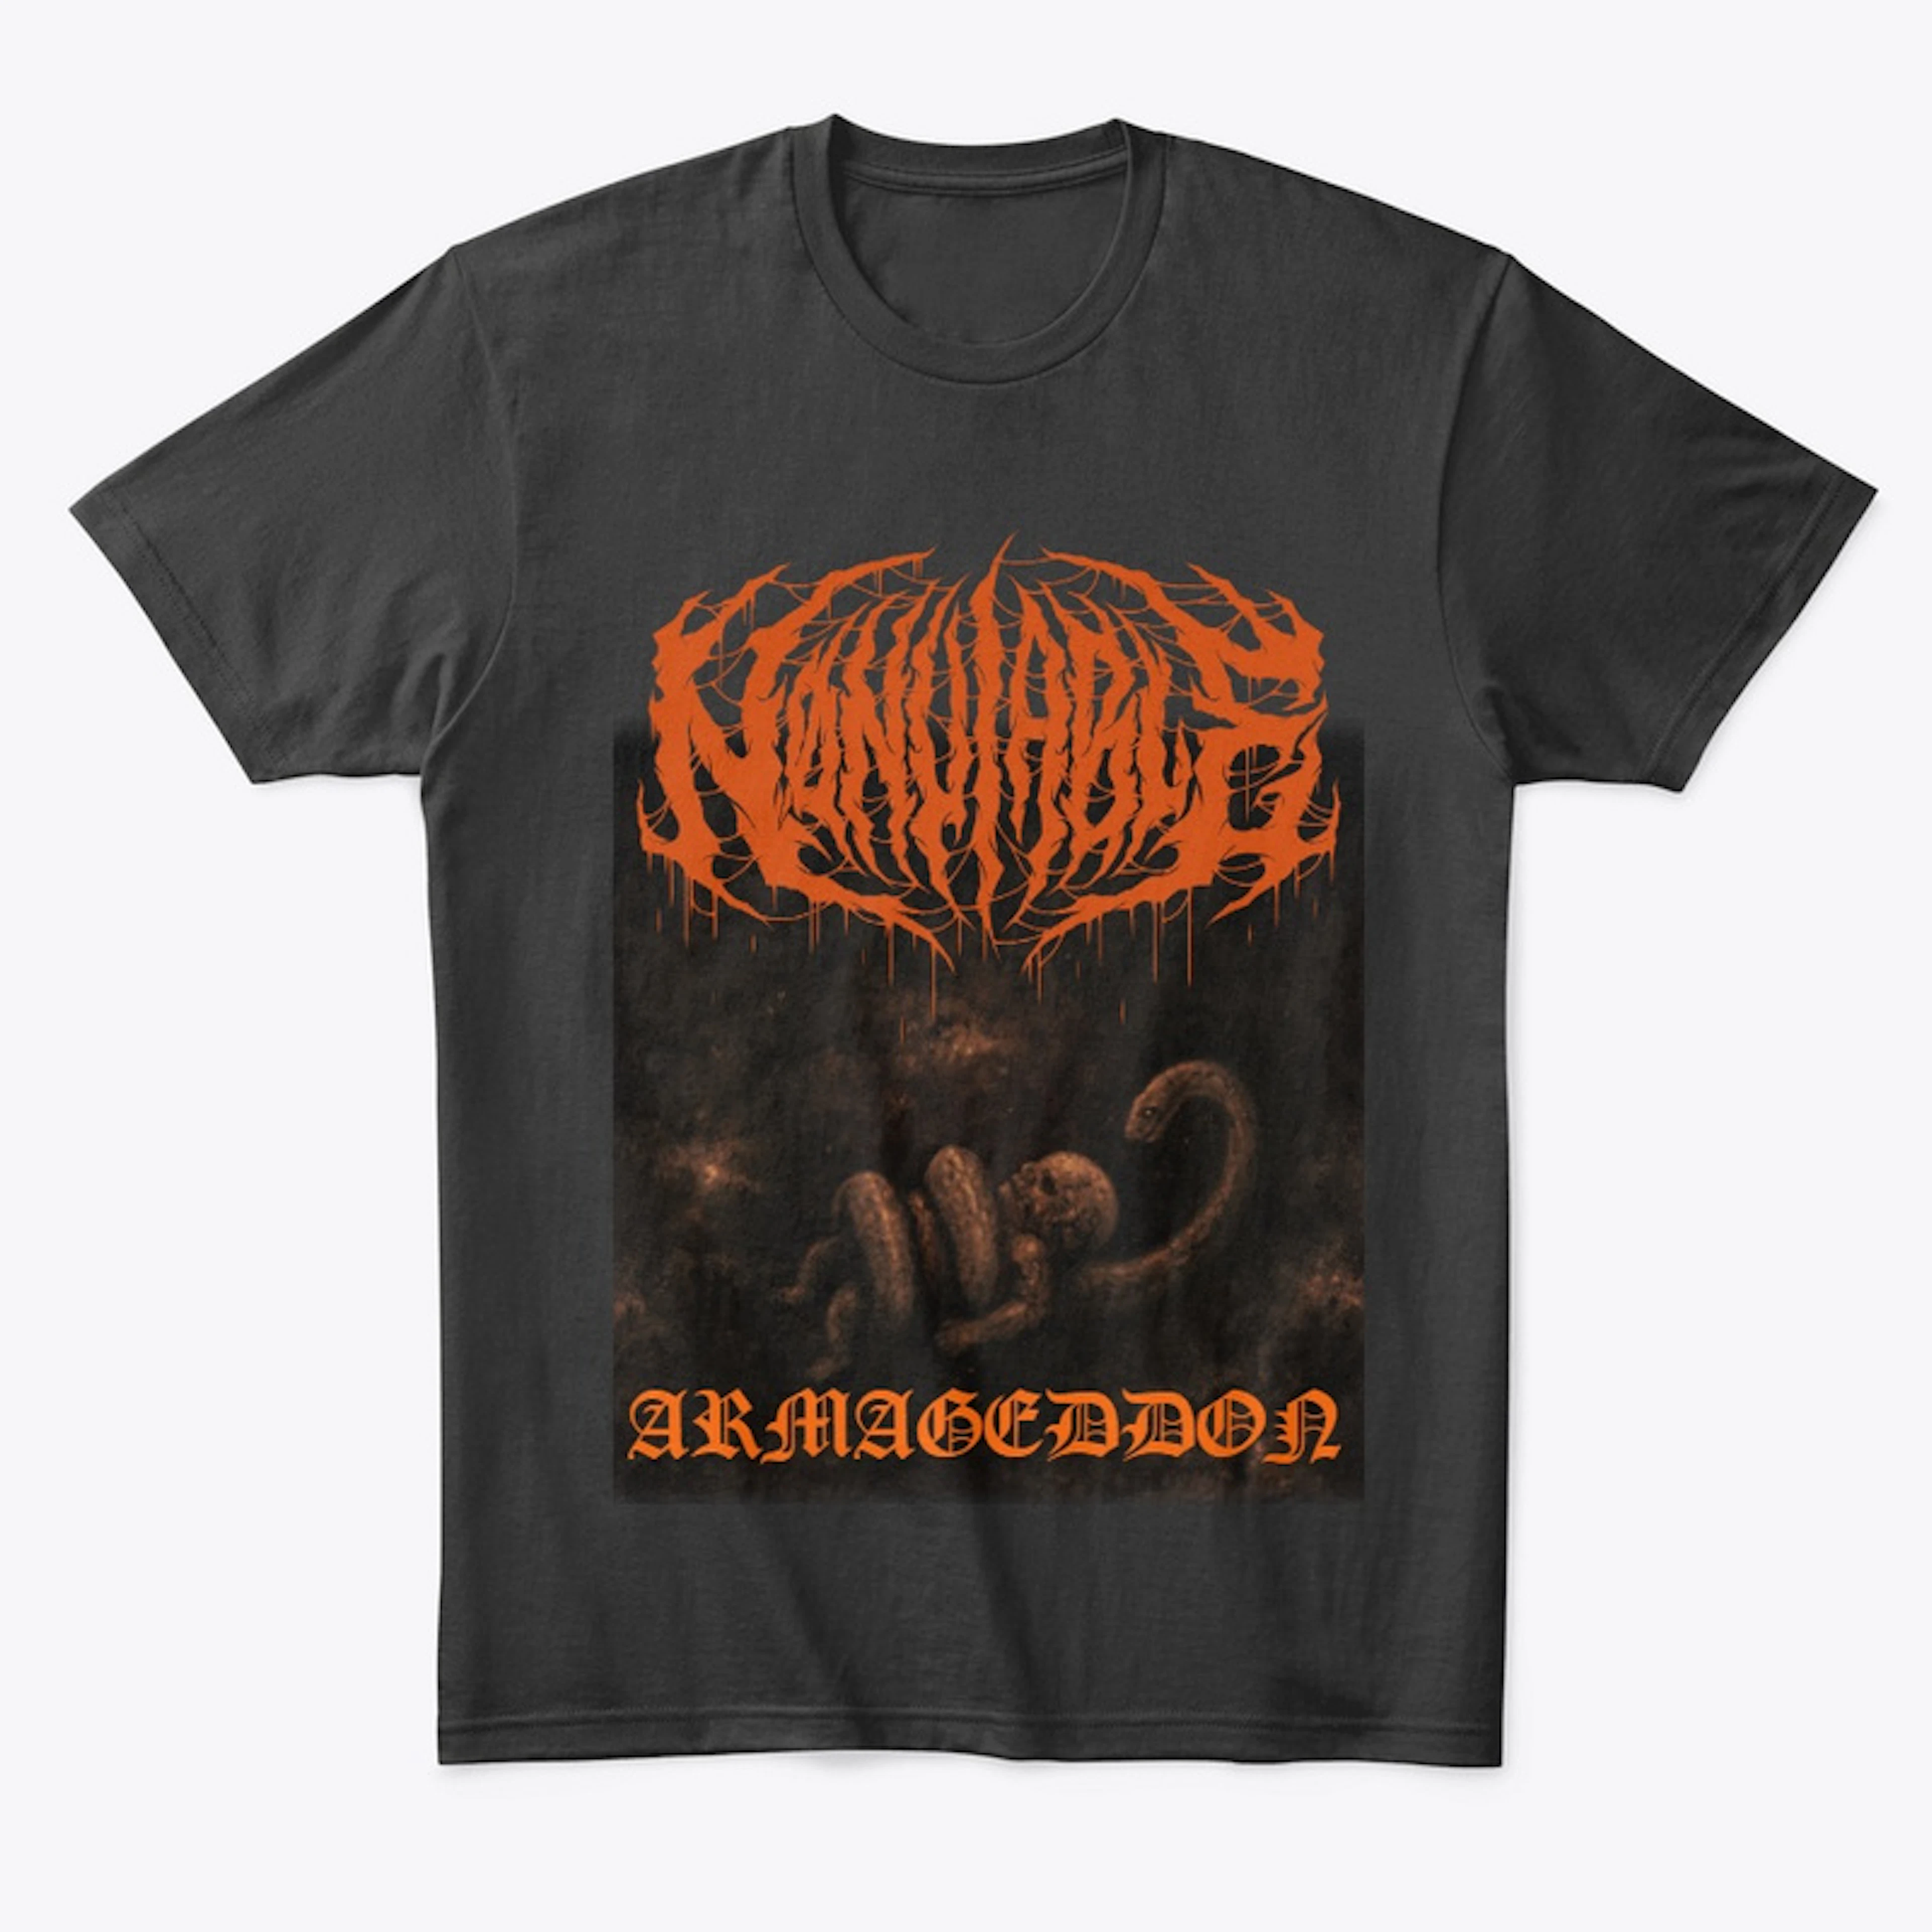 'Armageddon' Shirt